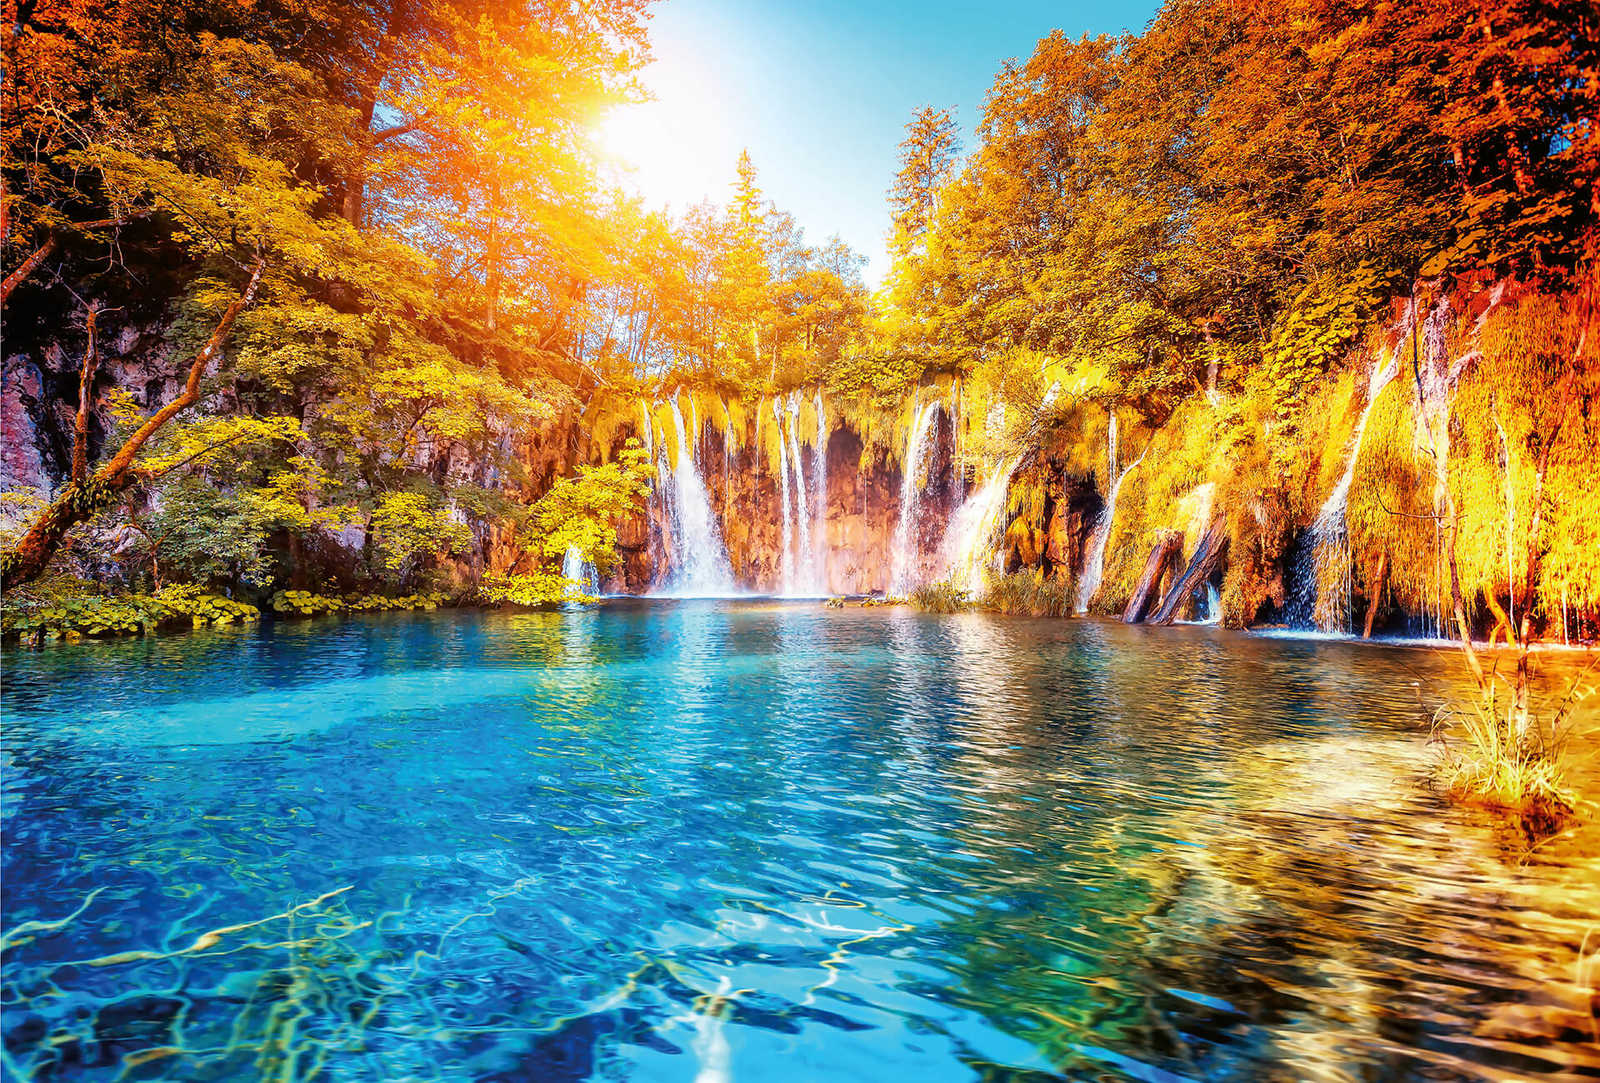             Landschaft Fototapete Wasserfall & See in Kroatien
        